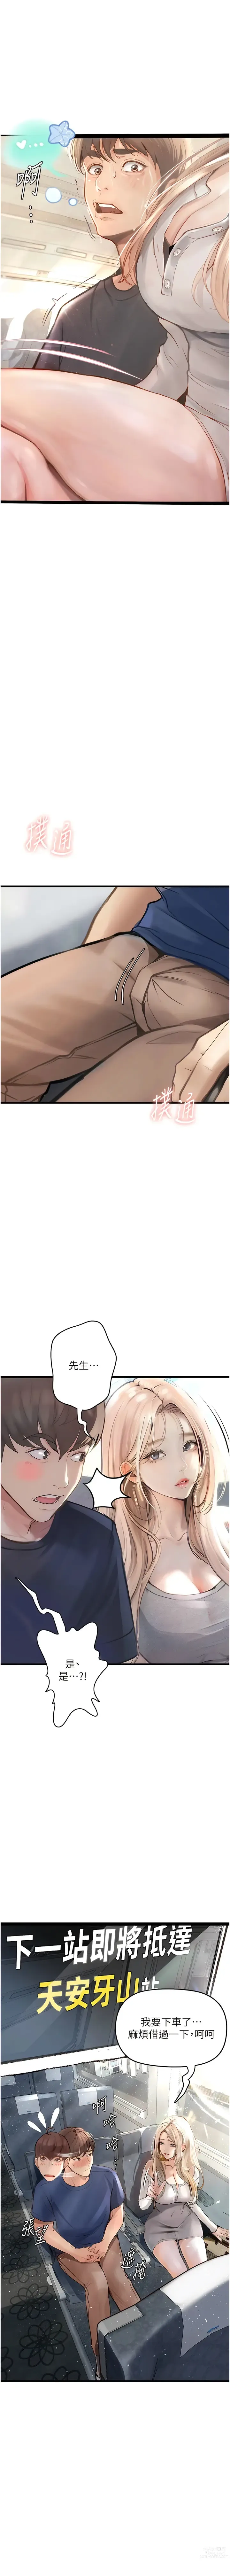 Page 10 of manga 墮落物語1-11